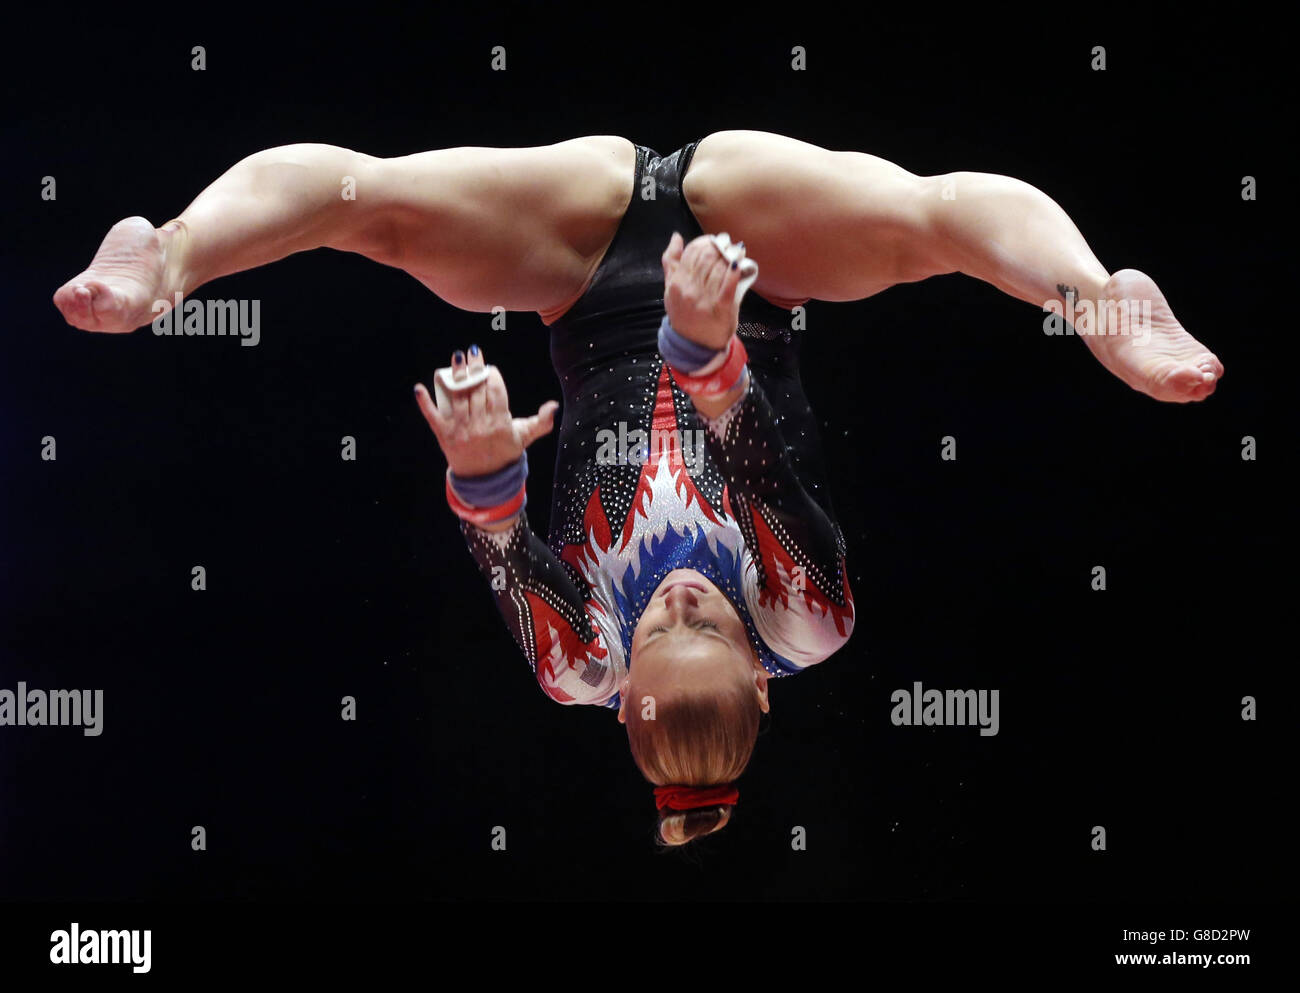 Der französische Marine Brevet tritt am zweiten Tag der Weltmeisterschaften der Gymnastik 2015 bei der SSE Hydro, Glasgow, an den parallelen Riegel an. Stockfoto